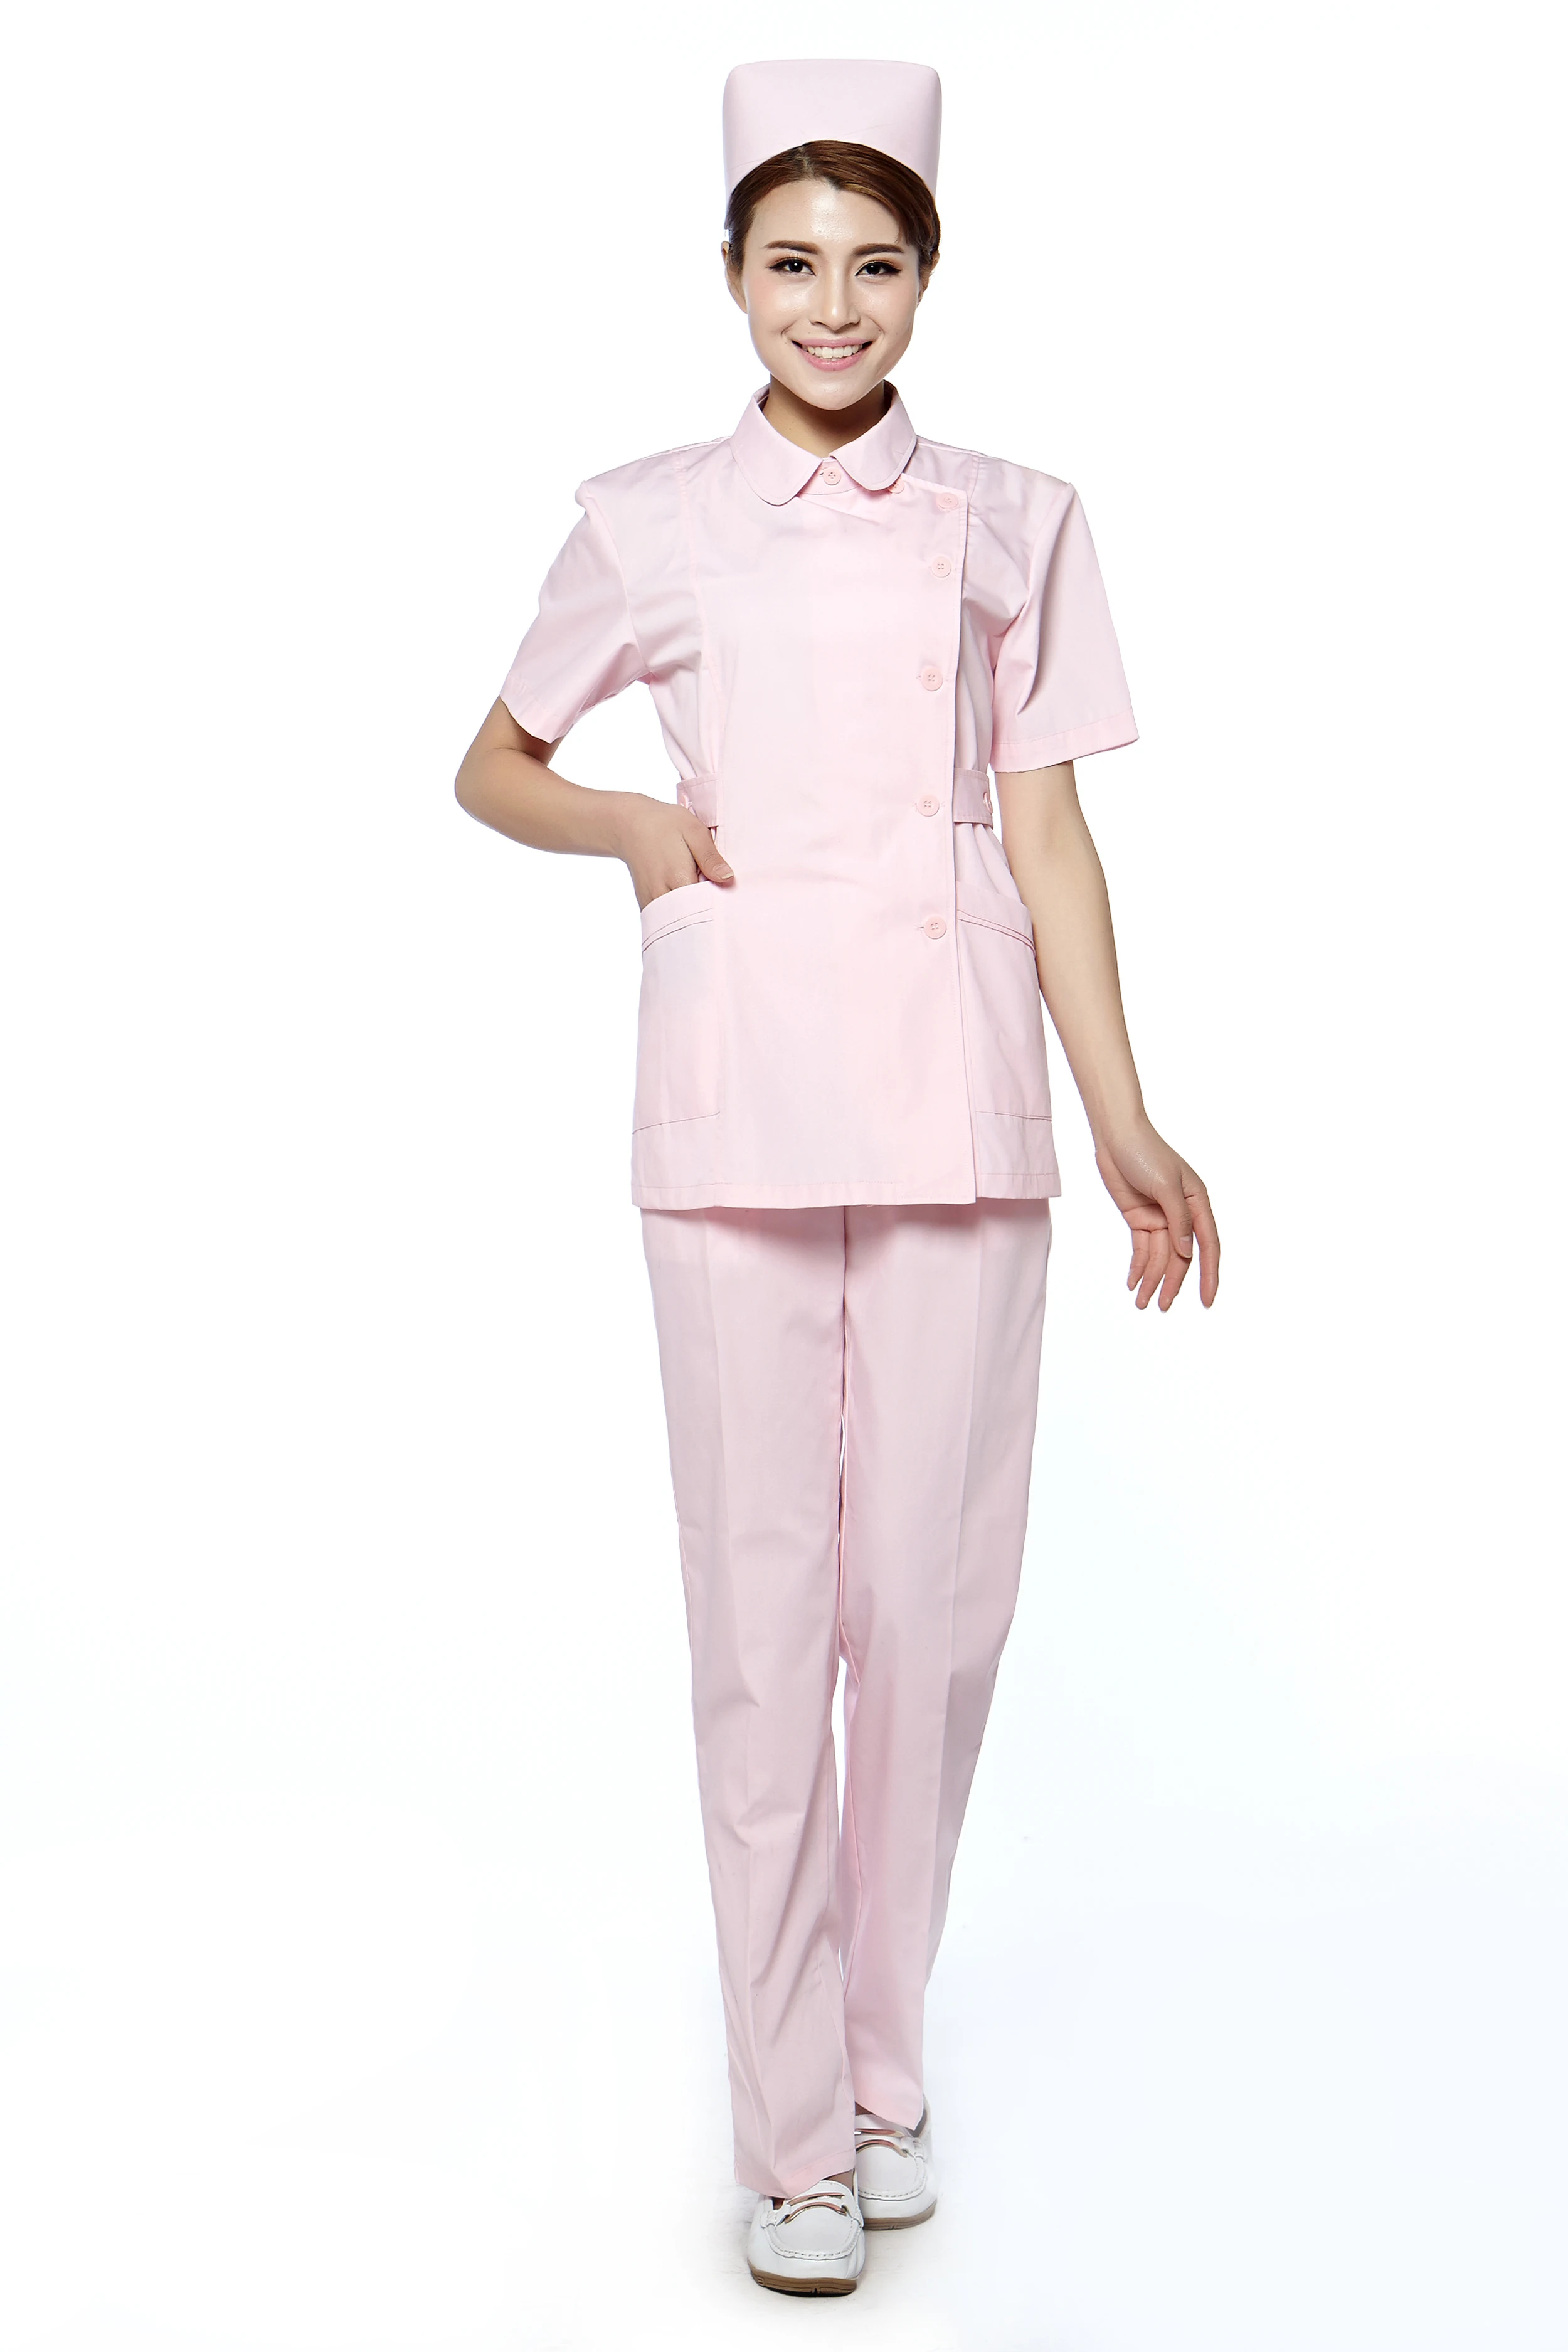 Roze Verpleegster Uniform Tuniek Broek Voor Vrouwen Apotheek Uniform Schoonheidssalon Uniform Mouwen Uniform| - AliExpress